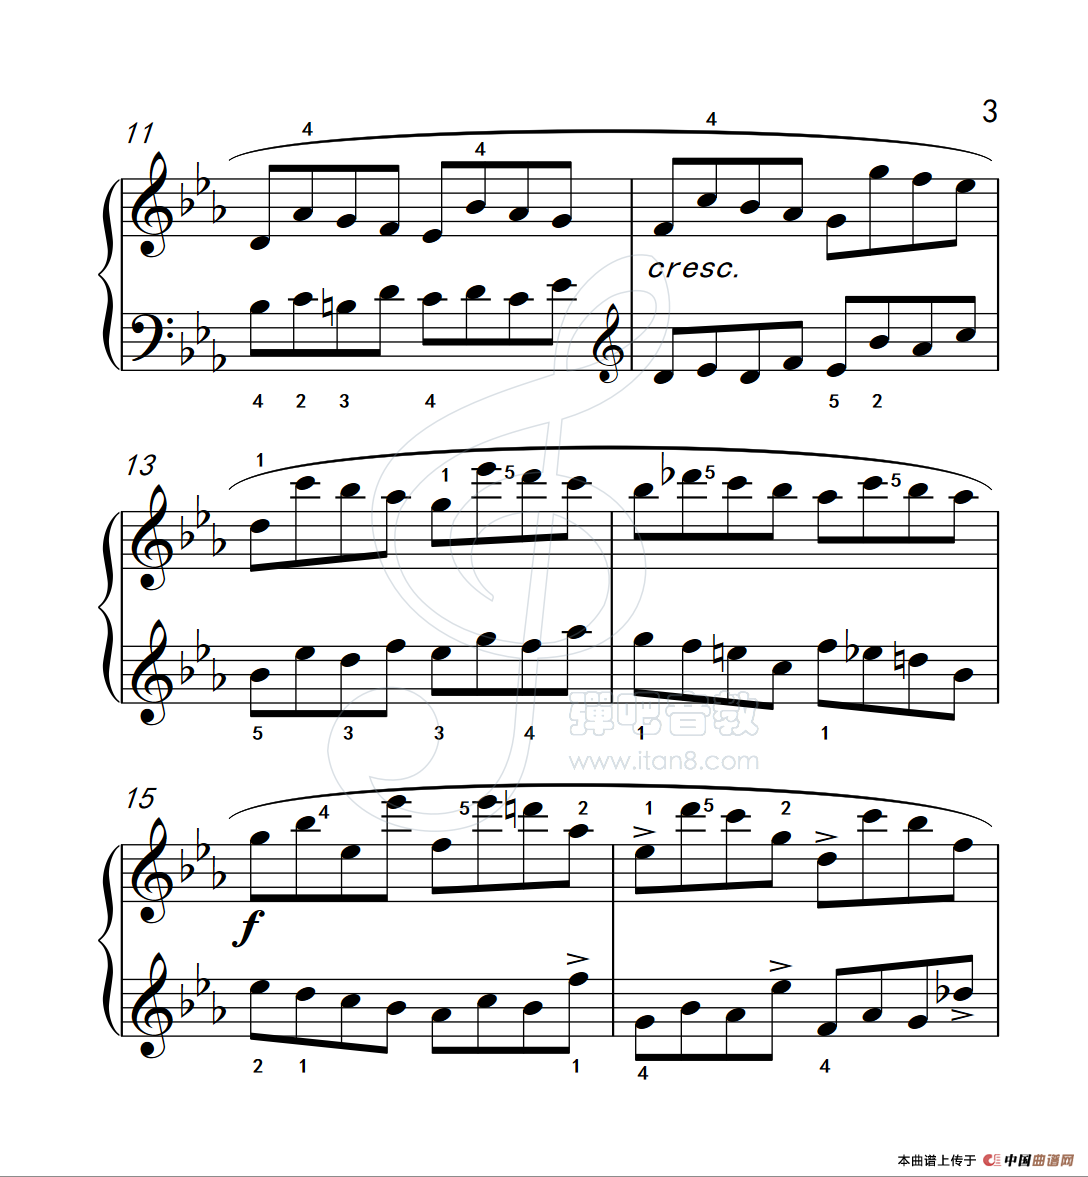 《练习曲 27》钢琴曲谱图分享